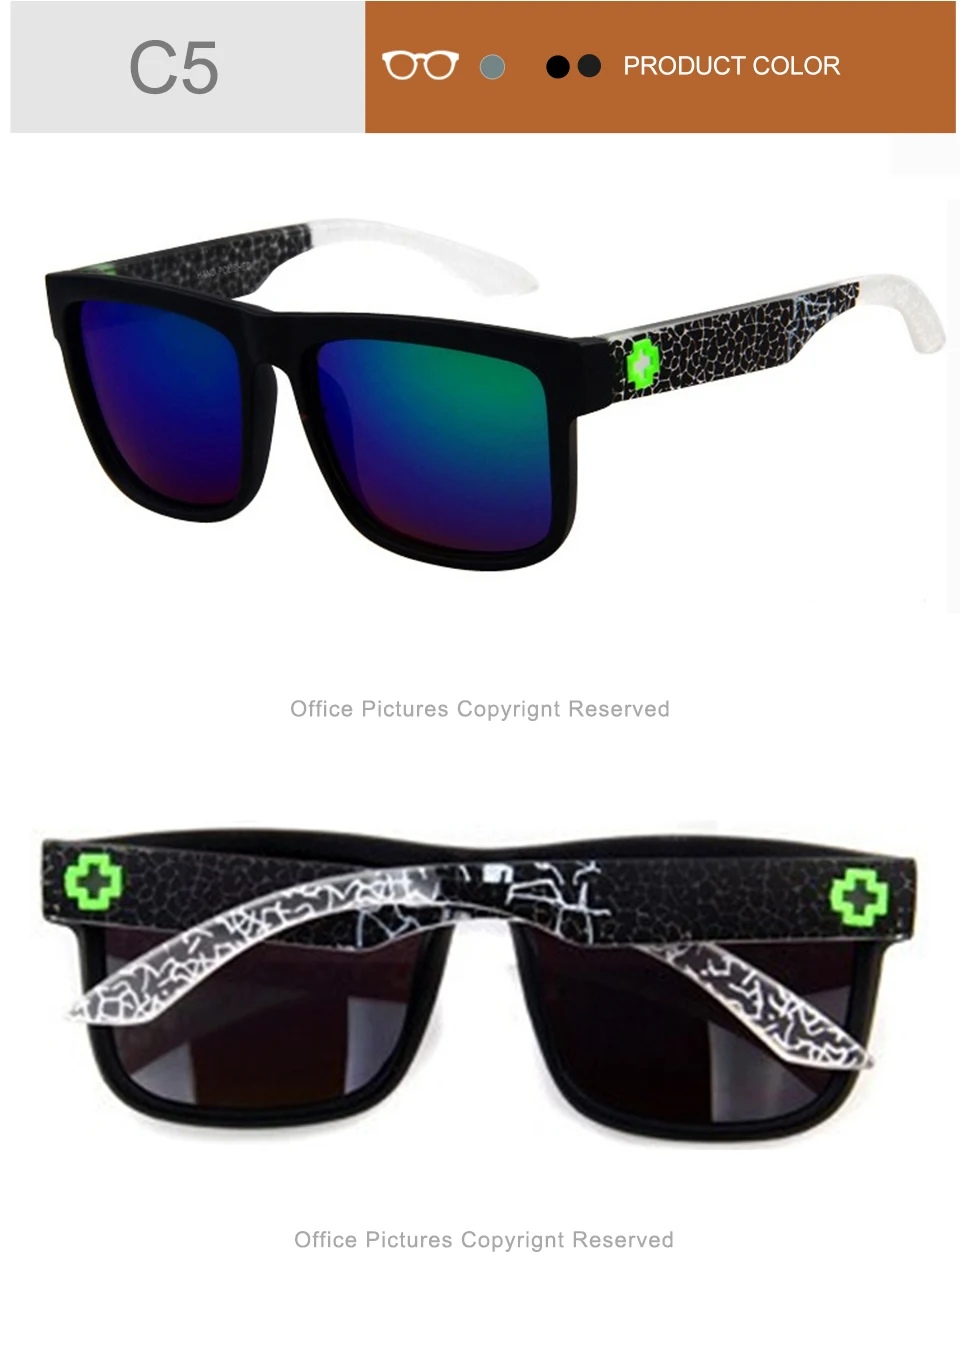 WANMEI. DS солнцезащитные очки высокого качества мужские и женские брендовые дизайнерские очки Зеркальные Солнцезащитные очки Модные Gafas Oculos De Sol UV400 классические